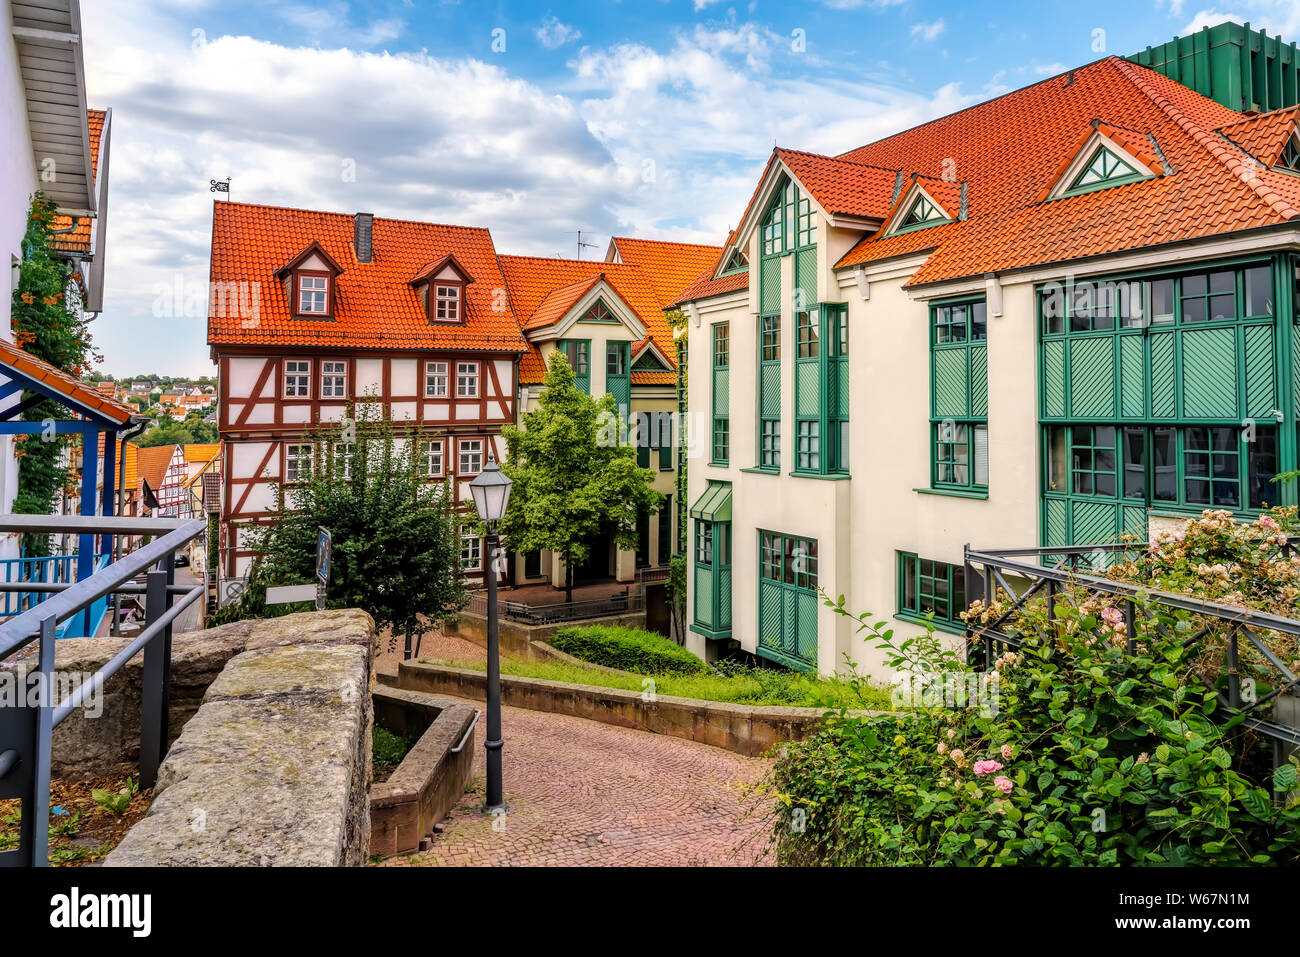 Historische Altstadt von Bad Wildungen an einem schönen Sommertag, Deutschland Stockfoto